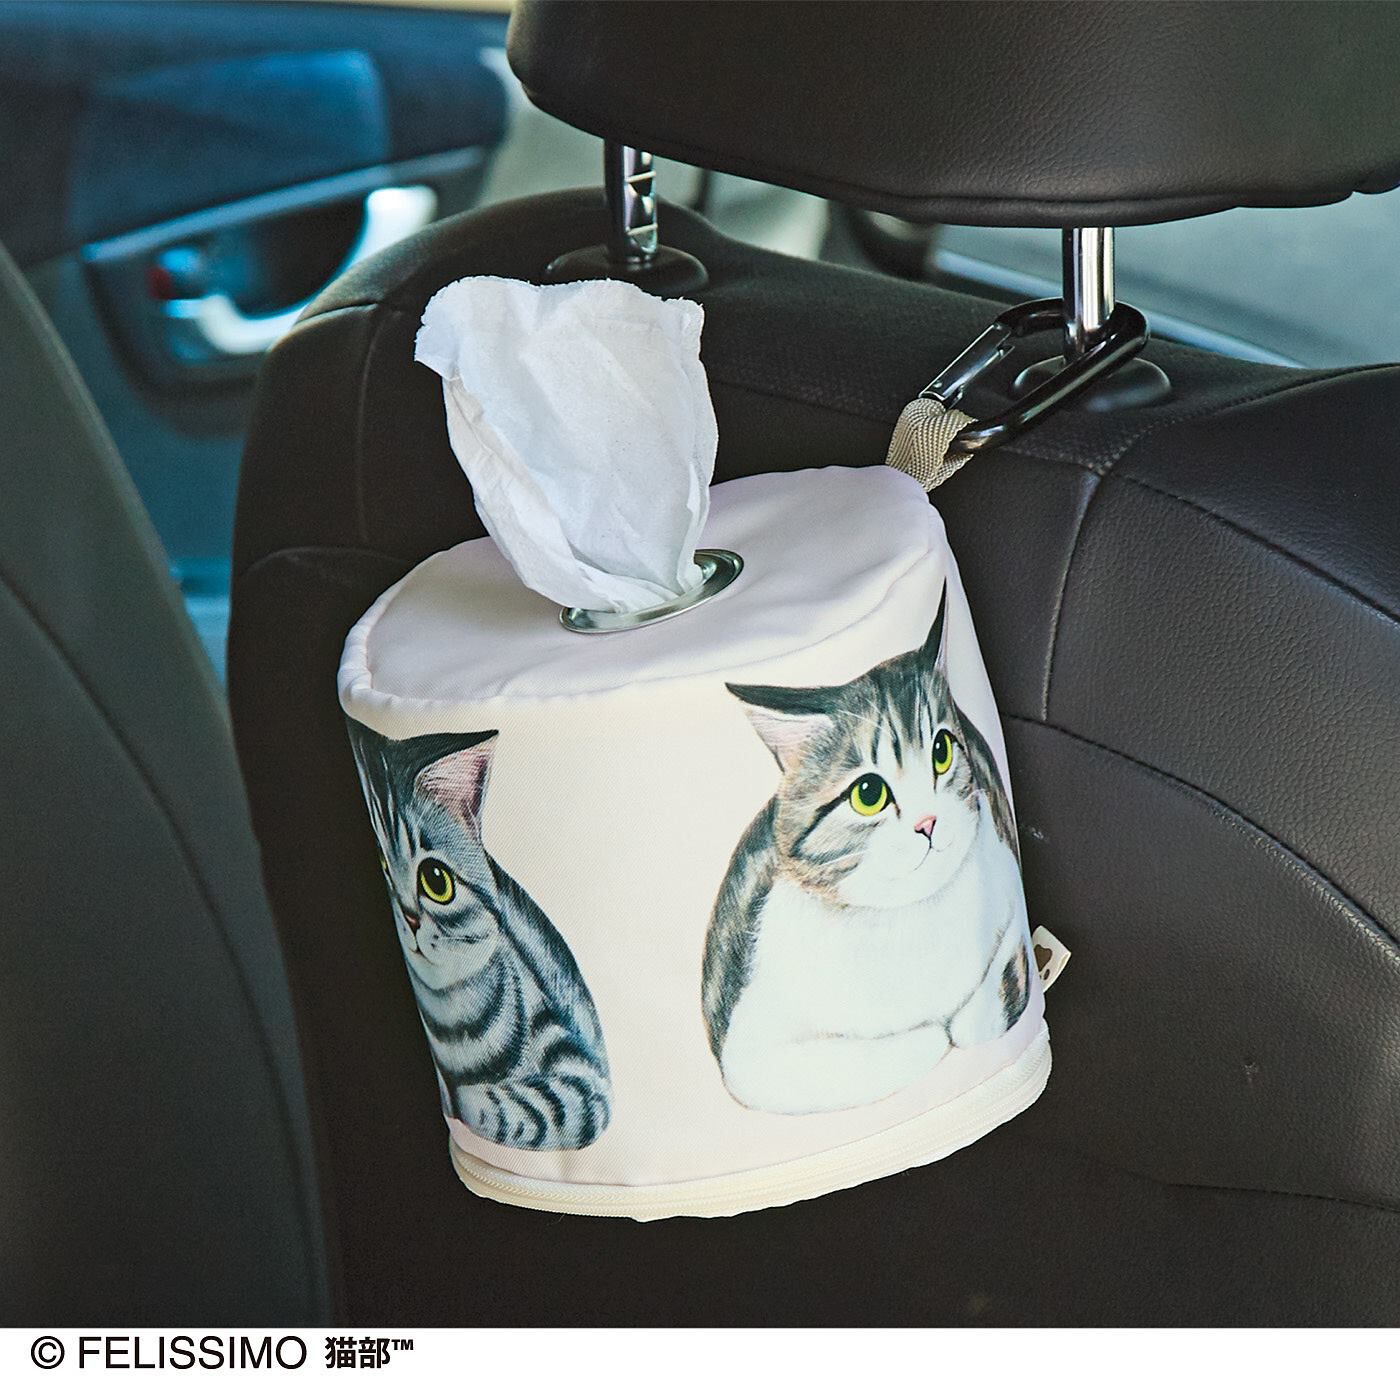 猫部|香箱座り猫さんのロールペーパーホルダーの会|カラビナやロープを通せるループが付いているので、車内につるしたり、アウトドアシーンでも活躍します。